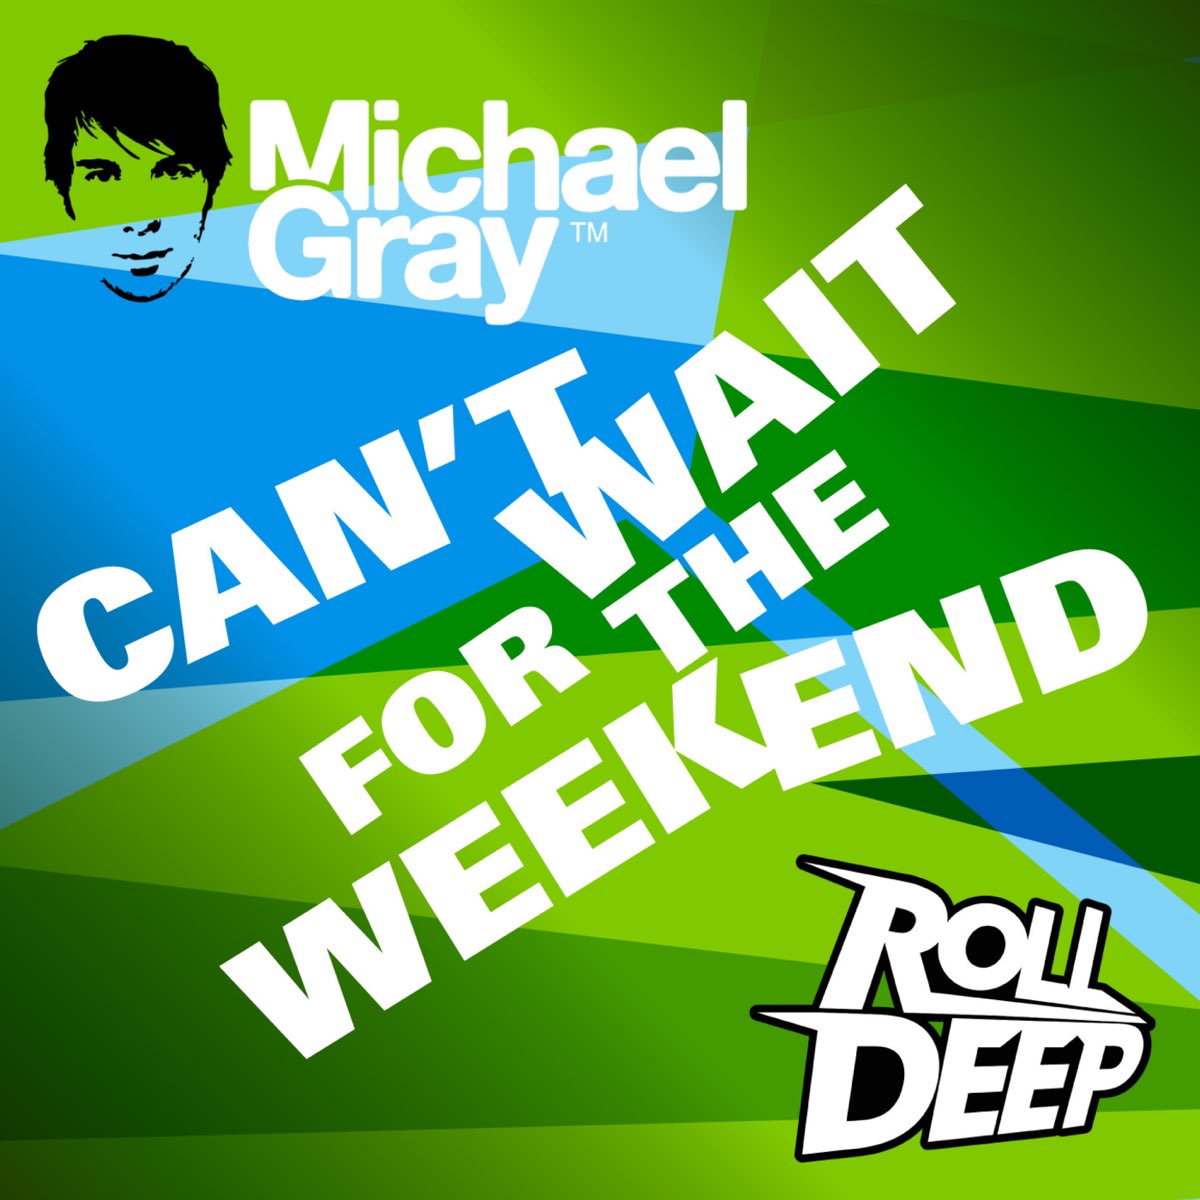 H weekend. The weekend Radio Edit Michael Gray. Weekend. The weekend Radio Edit.